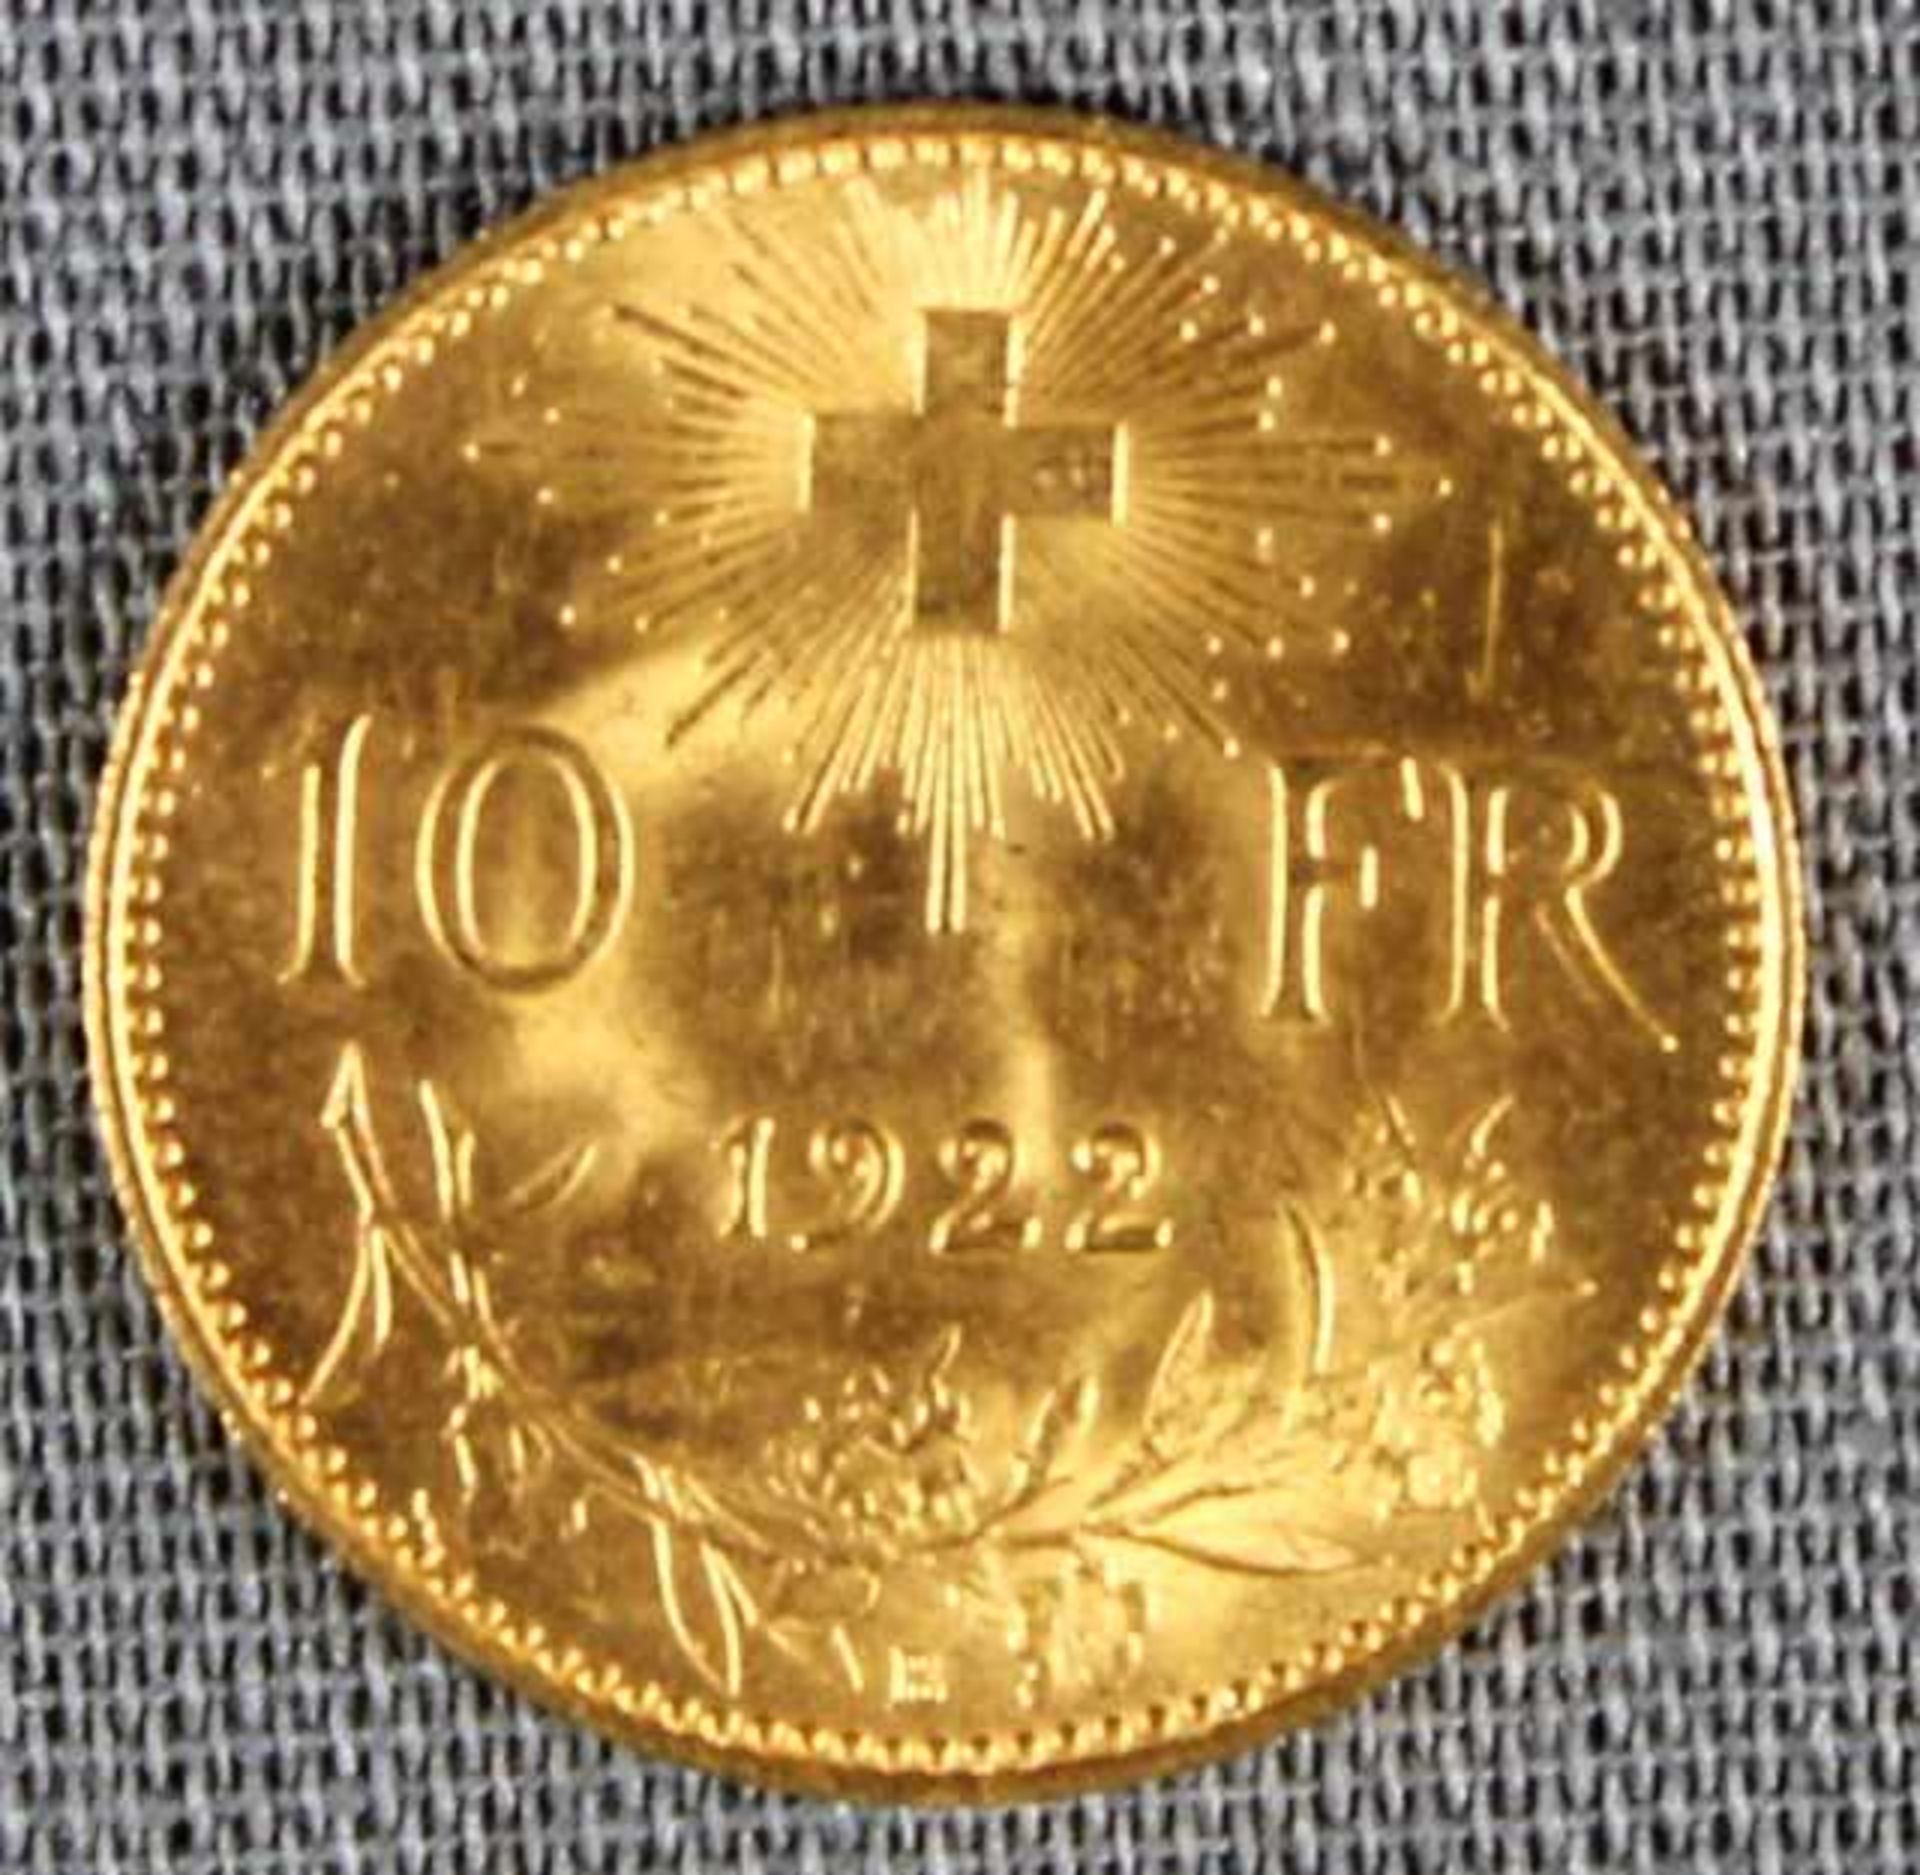 1 kleine Goldmünze (900/000) "10 Francs/Vreneli 1922", 3,22g, Feingewicht 2,90g, D 19mm, sehr schöne - Bild 2 aus 2